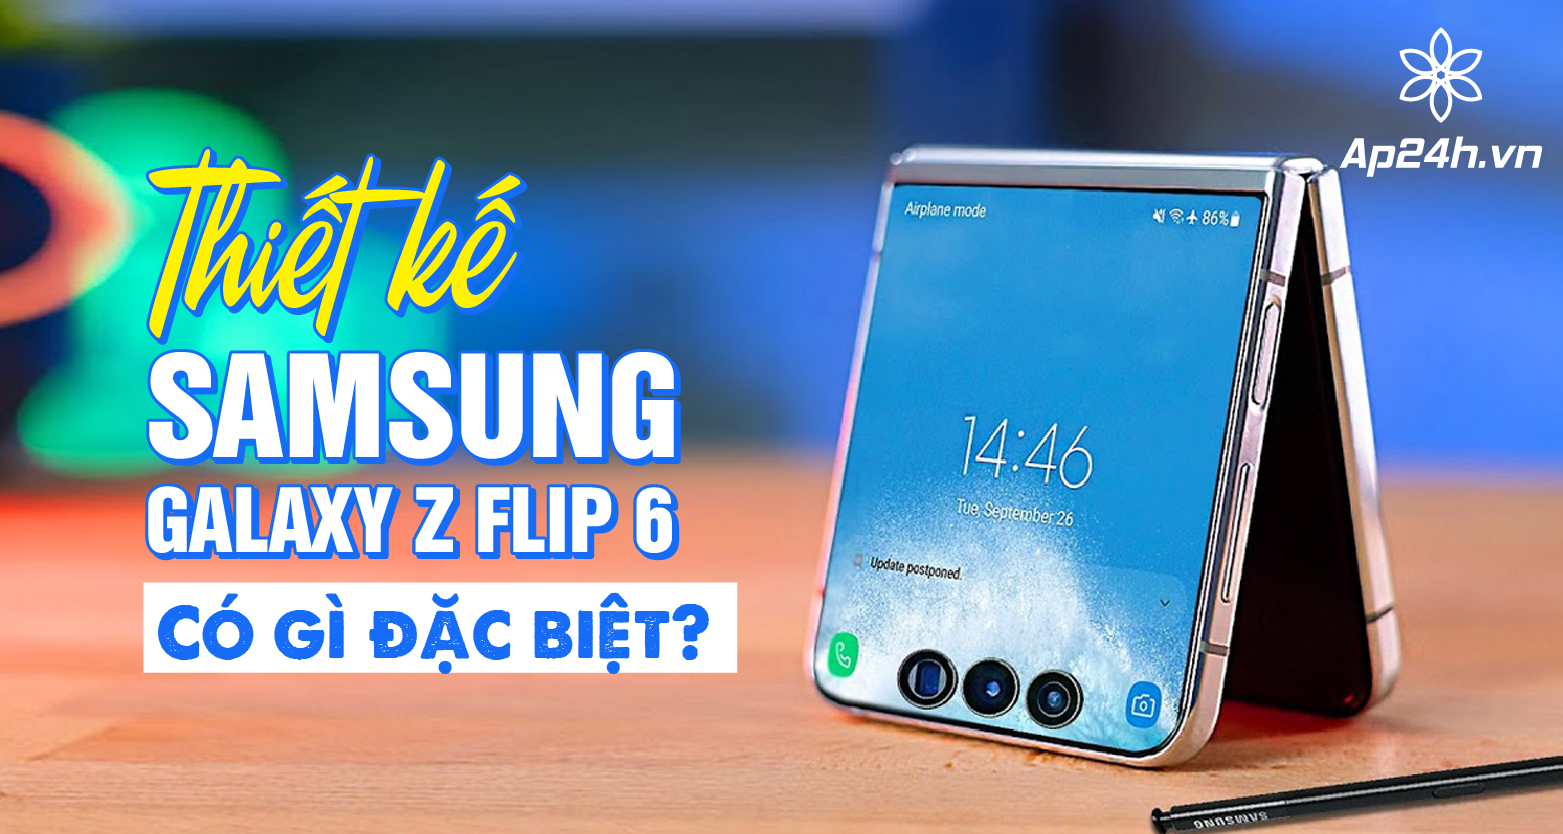 Thiết kế Samsung Galaxy Z Flip 6 có gì đặc biệt?